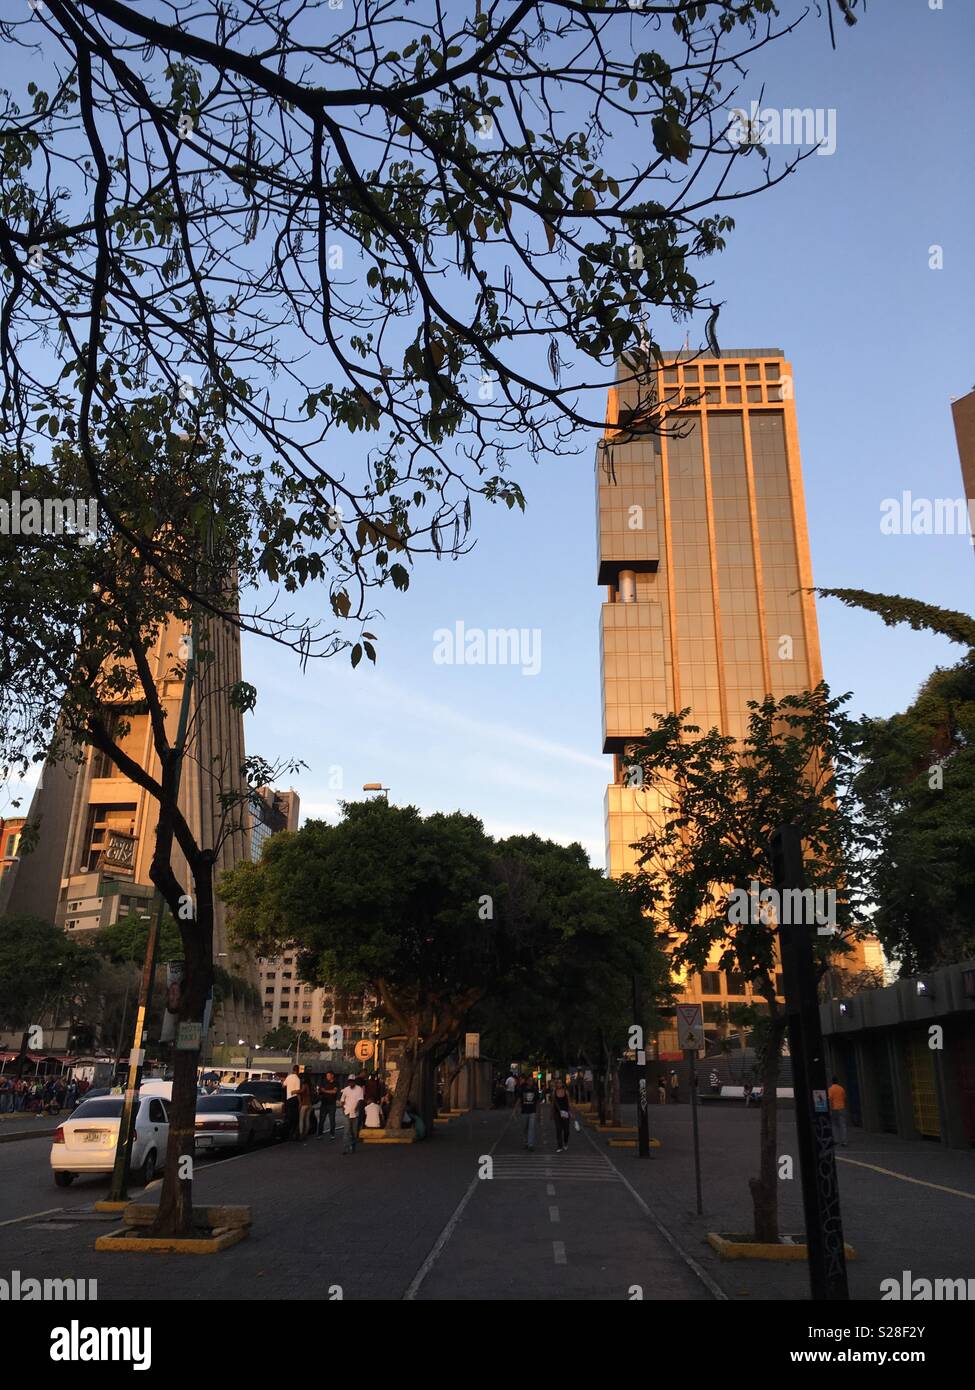 Sabana Grande, Abraham Lincoln Avenue, Gran Avenida, Vicente Quintero. Caracas Venezuela Stock Photo